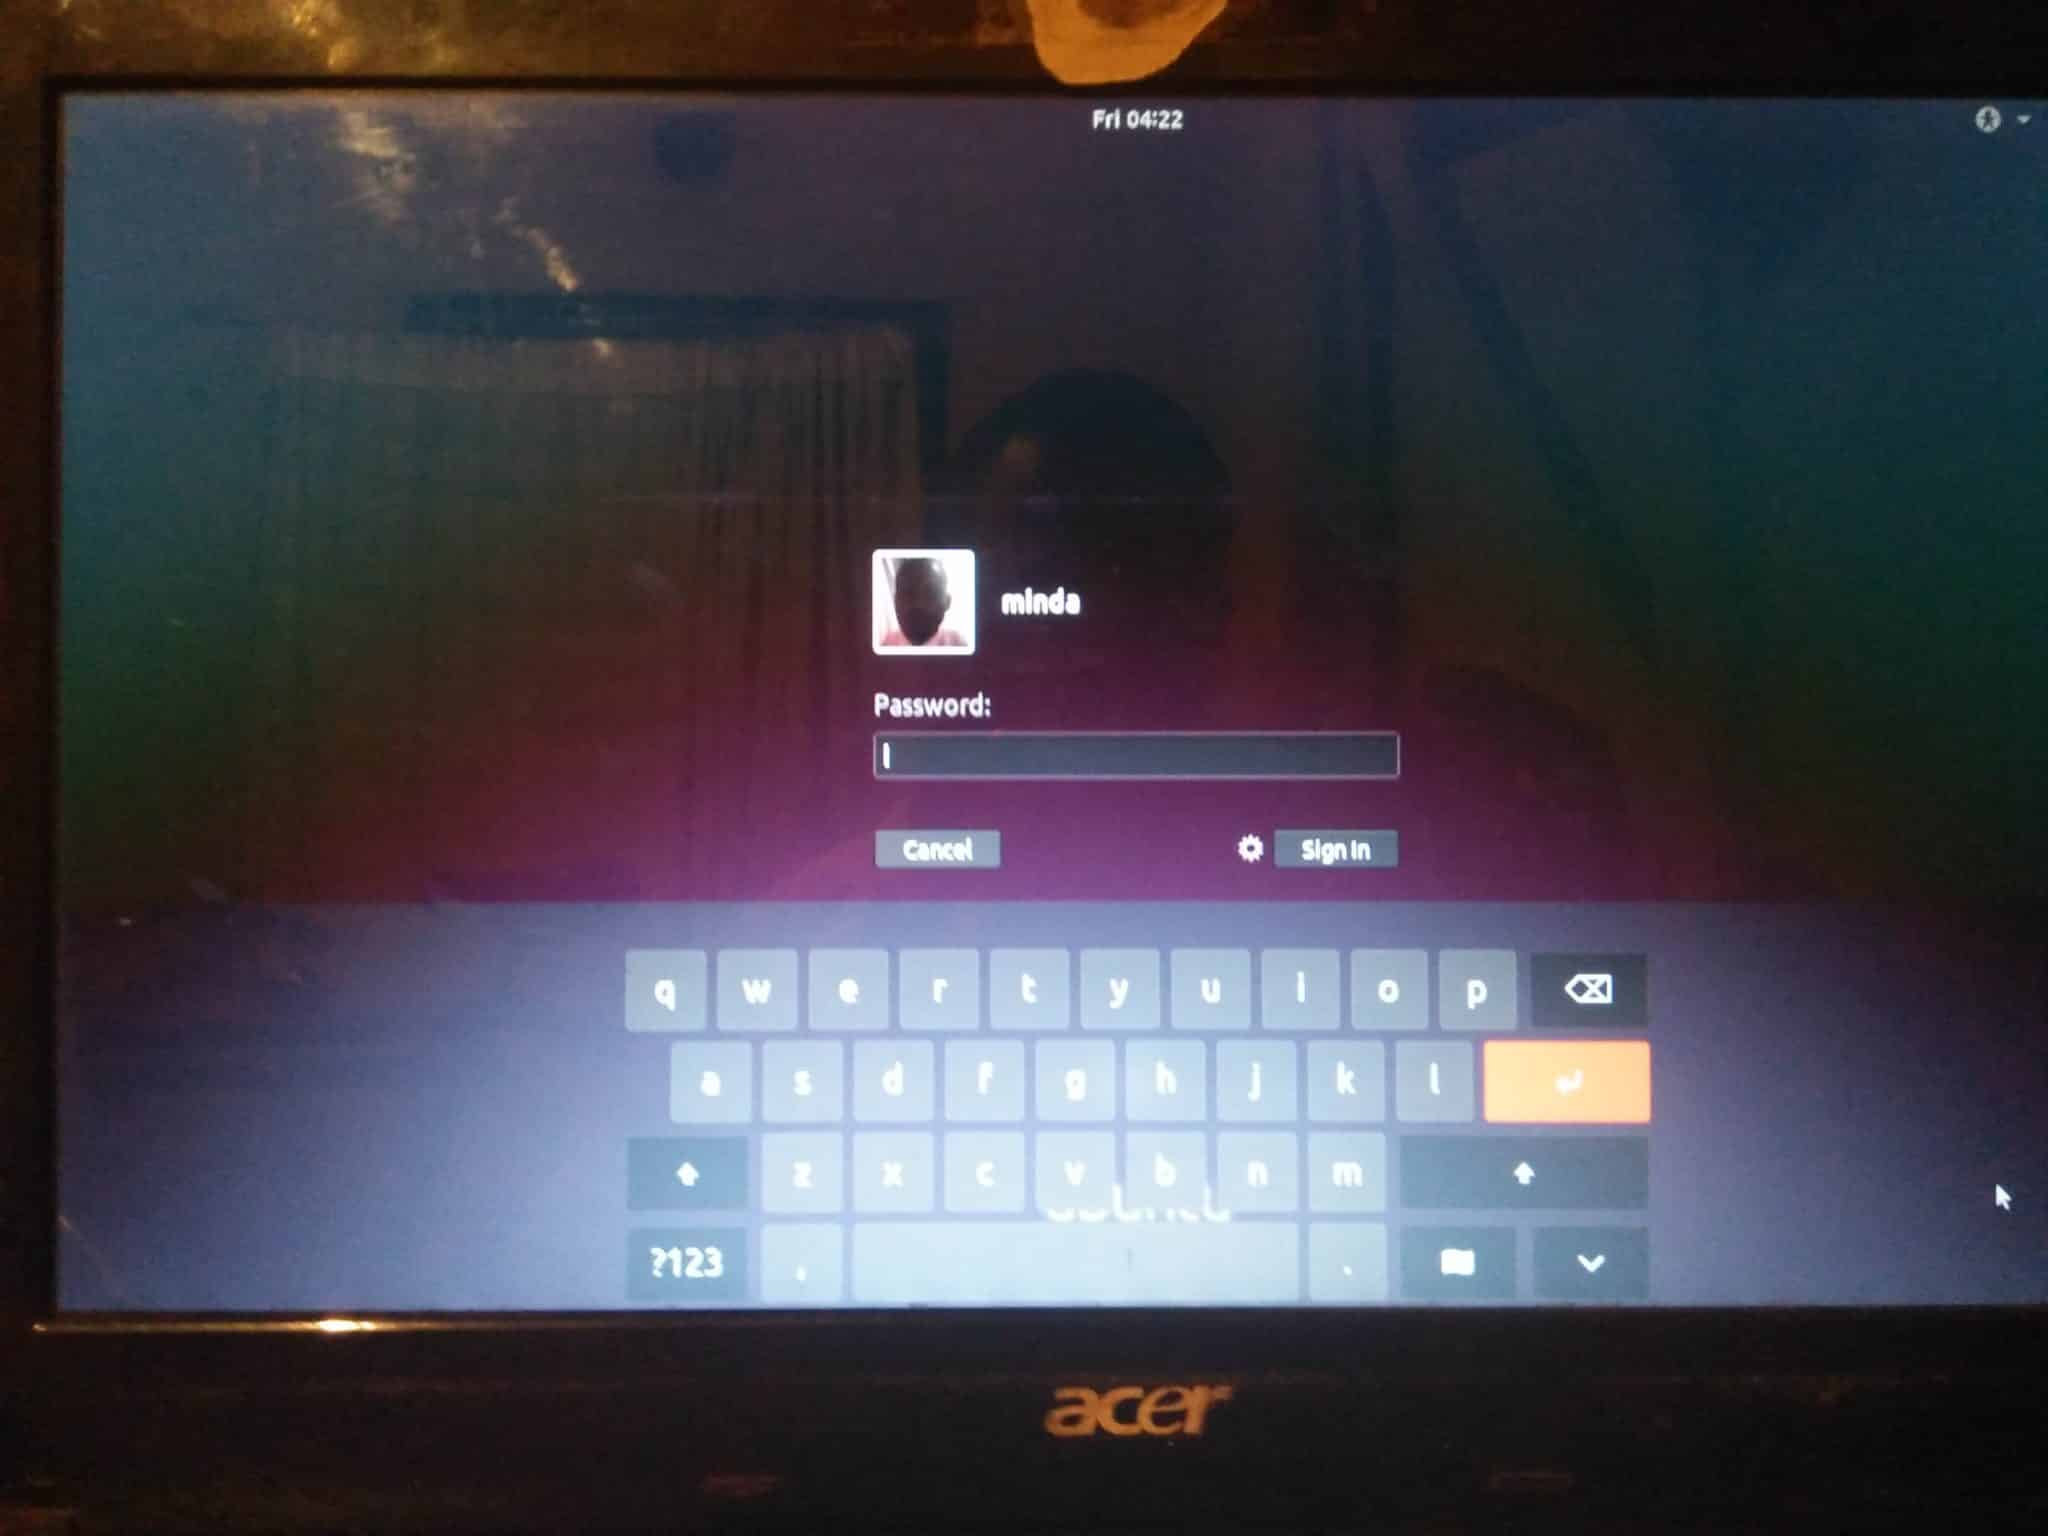 install windows 10 on ubuntu